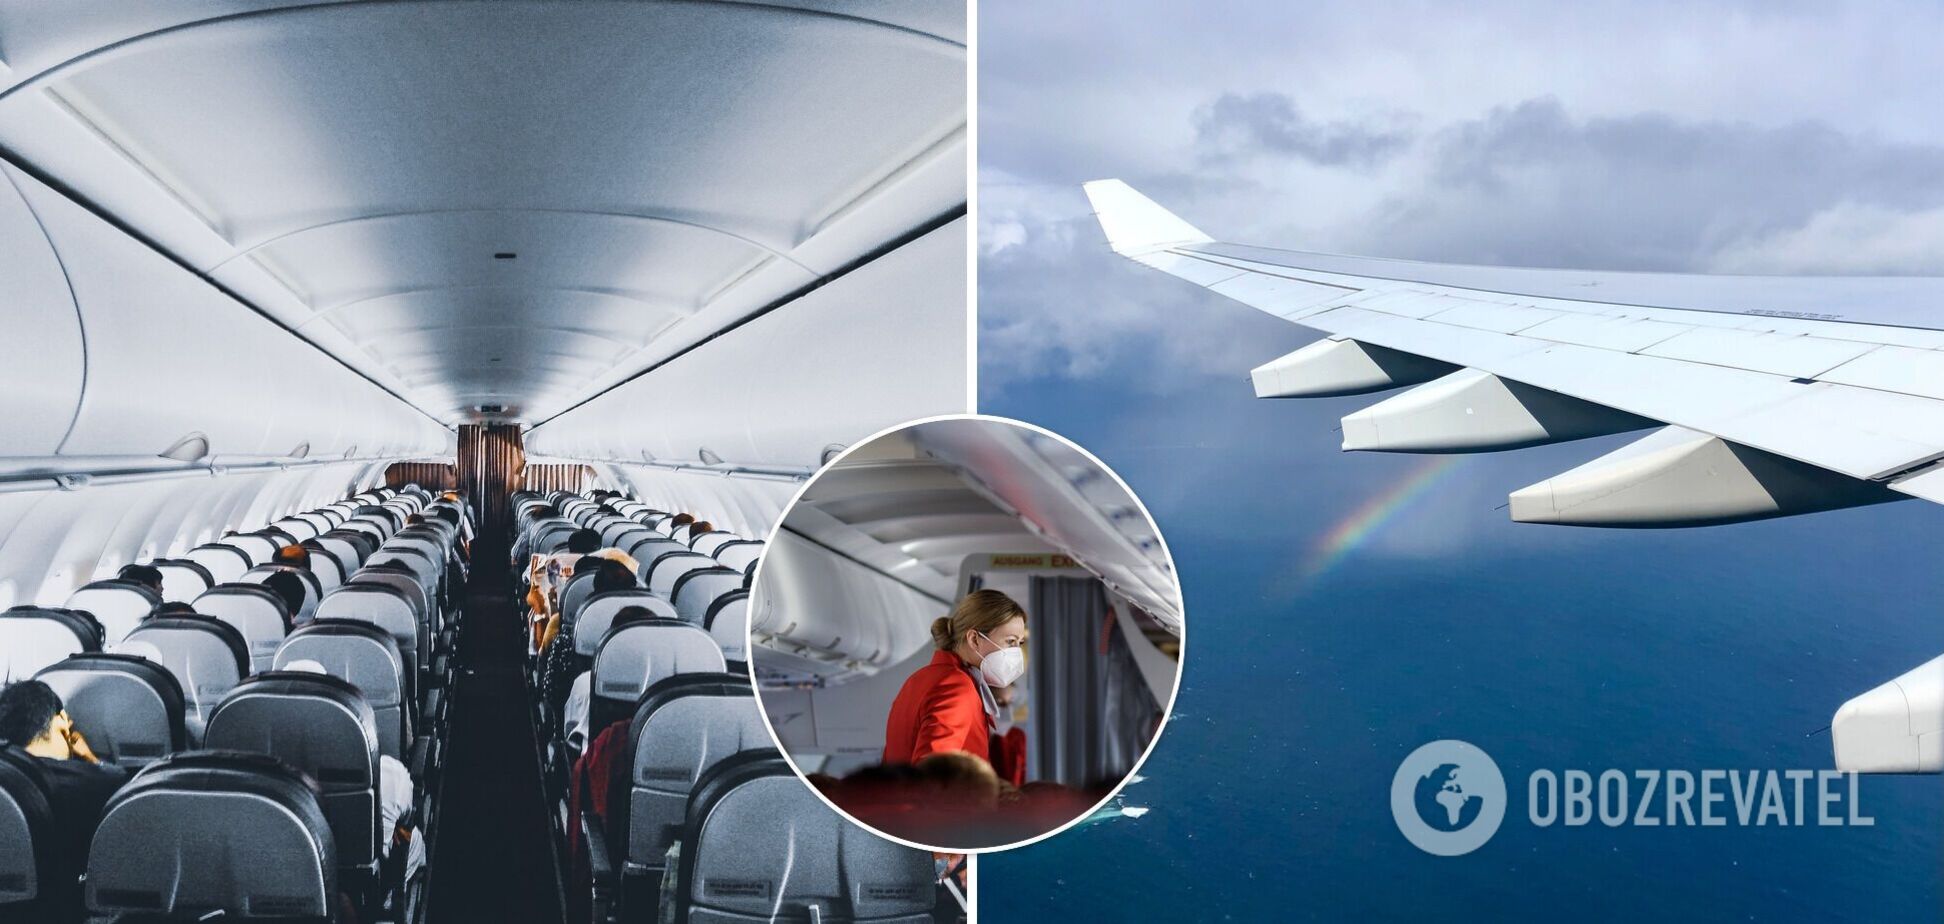 Стюардесса рассказала об опасных местах для сна в самолете